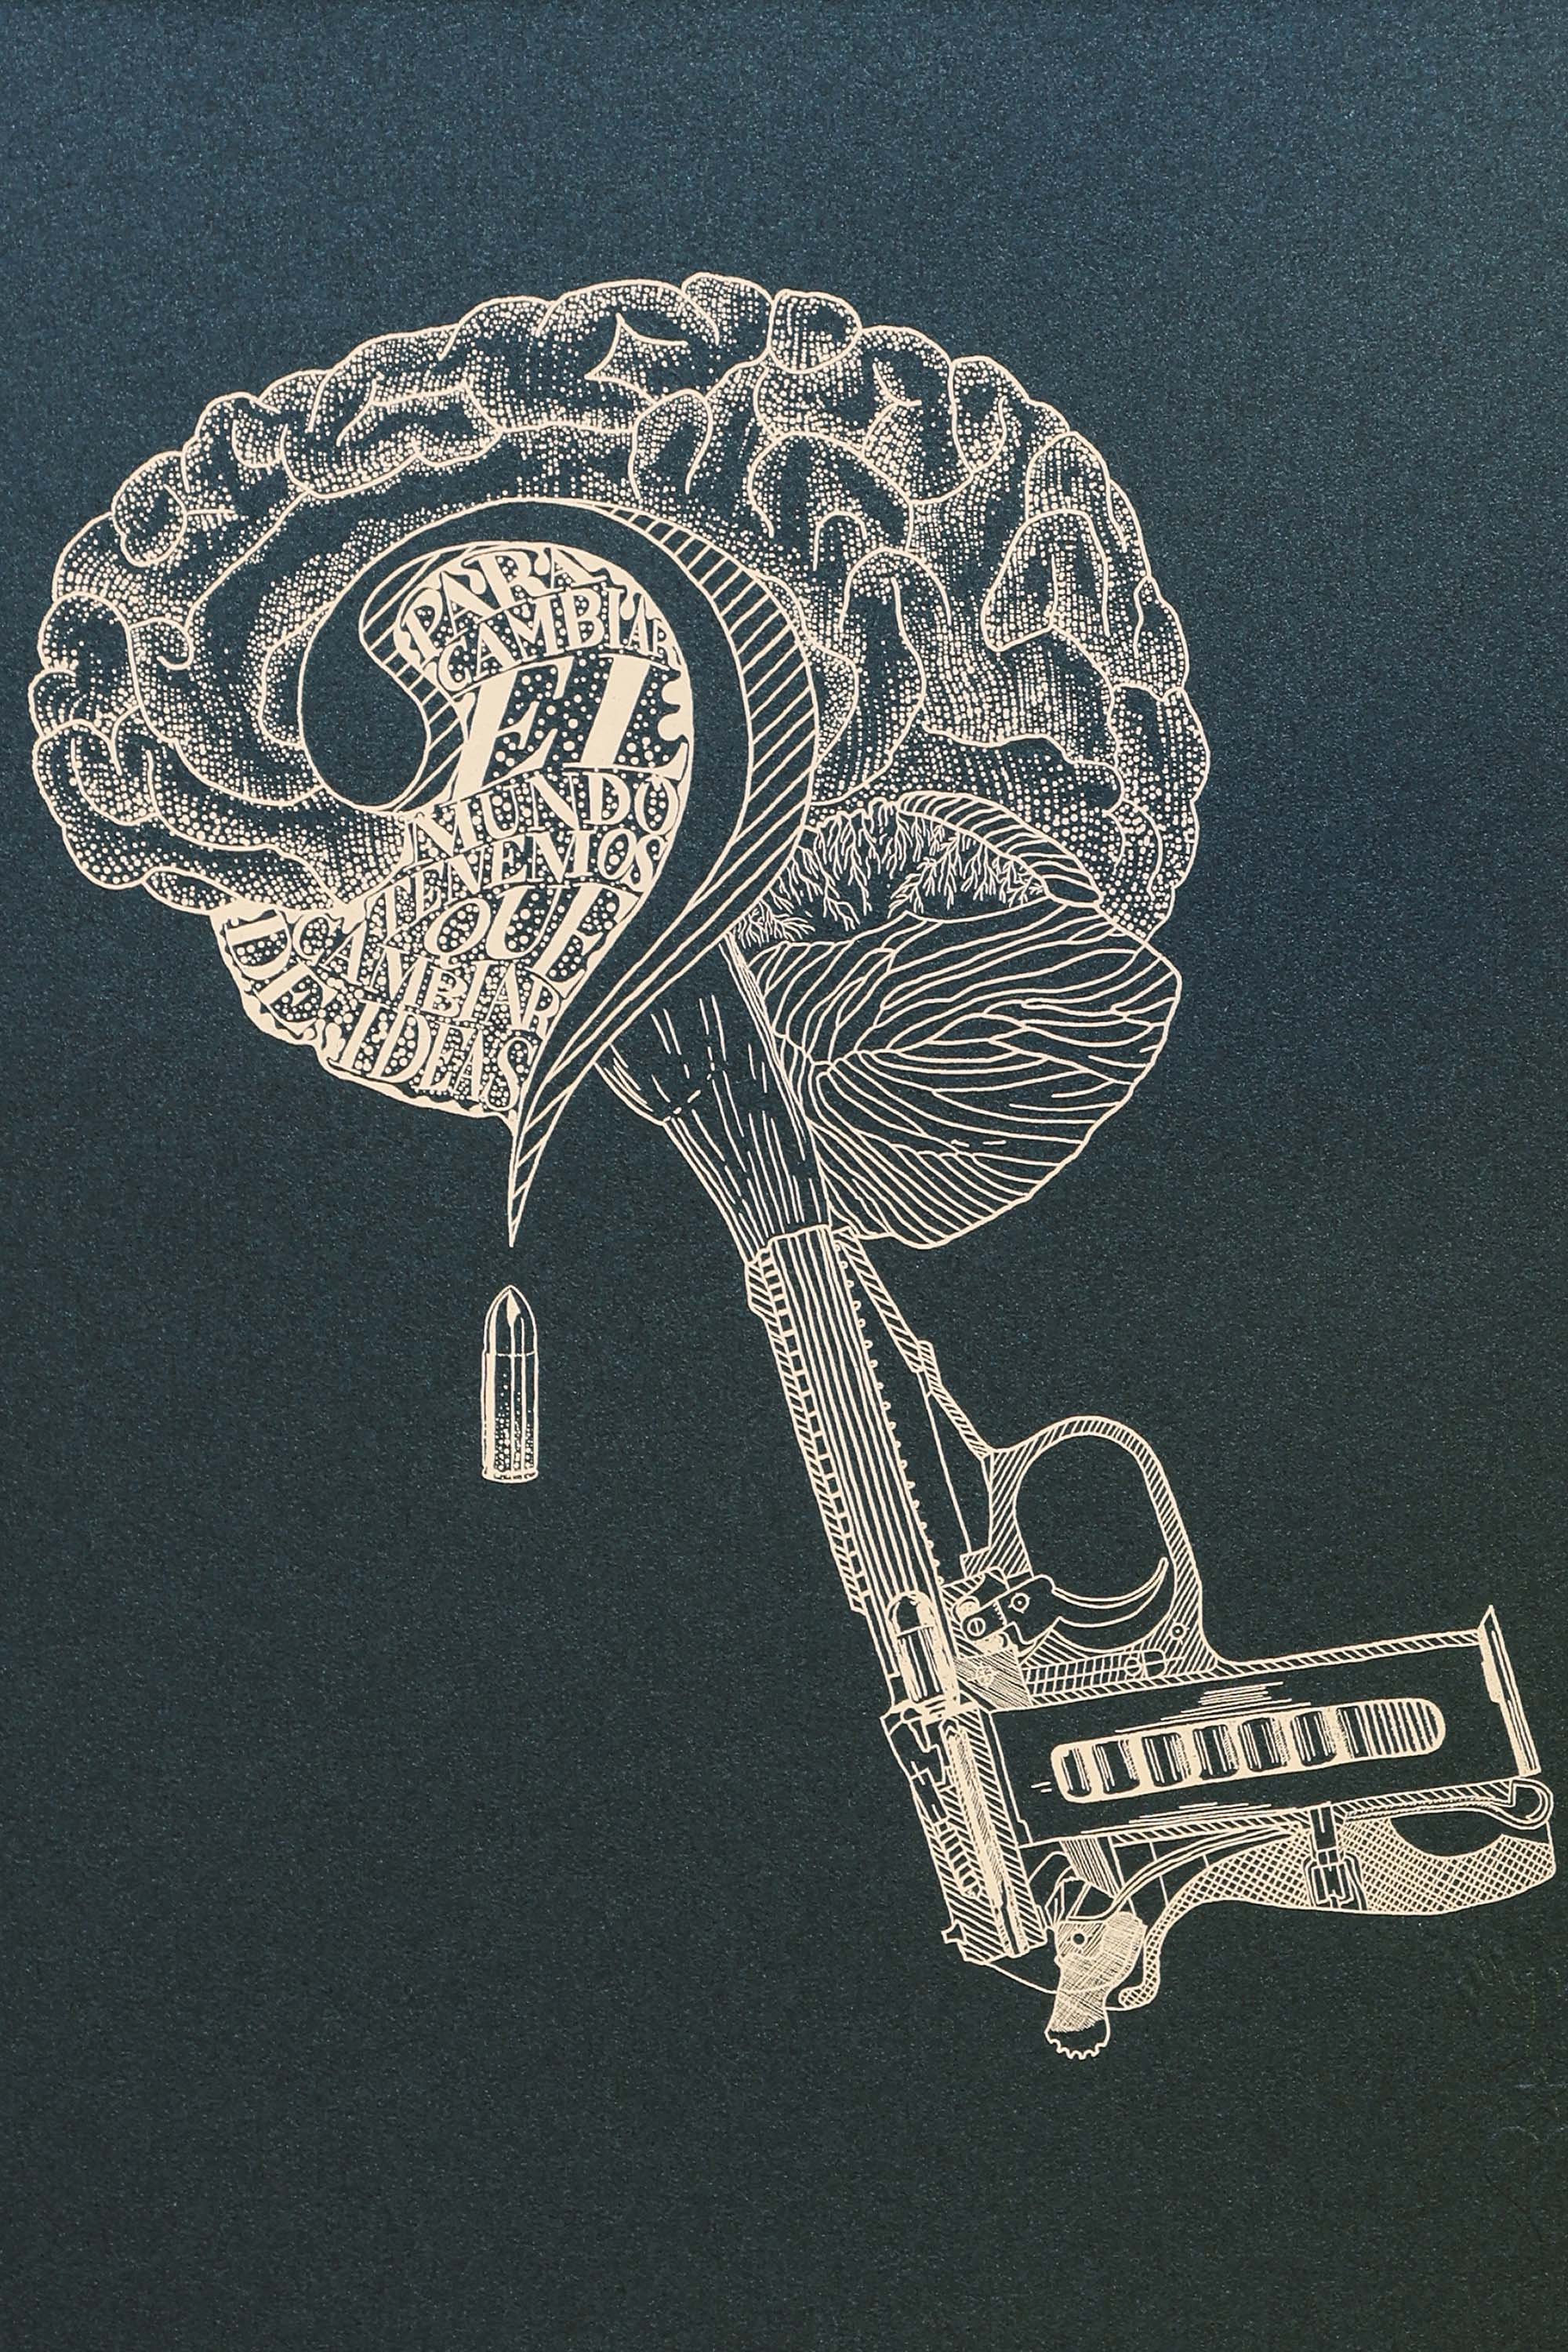 Sérigraphie édition limitée - Cerebro - 30x40cm idée cadeau éthique faire plaisir